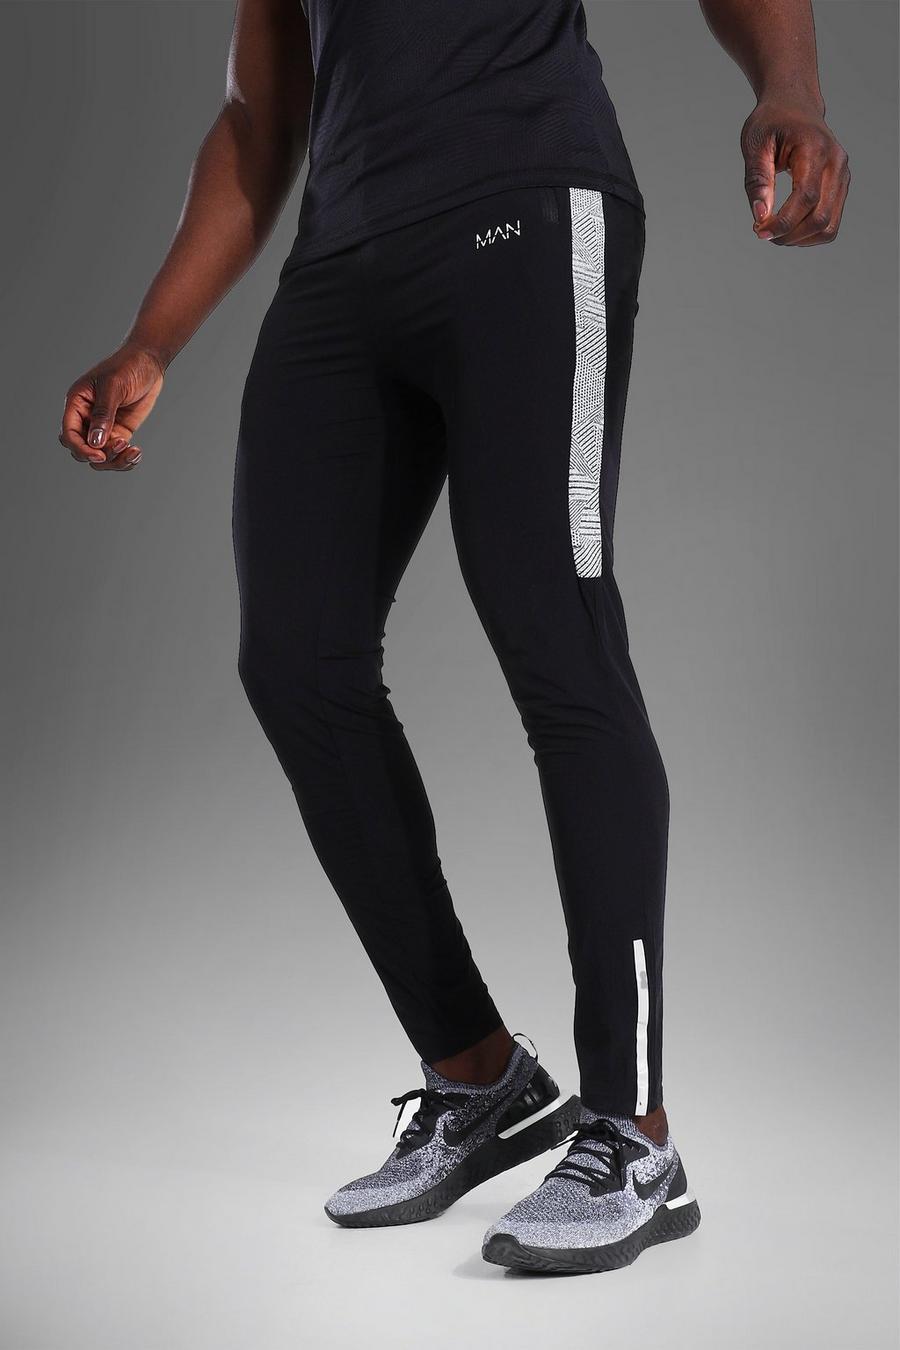 שחור מכנסי ריצה ספורטיביים קלי משקל לחדר הכושר עם כיתוב MAN ופס image number 1